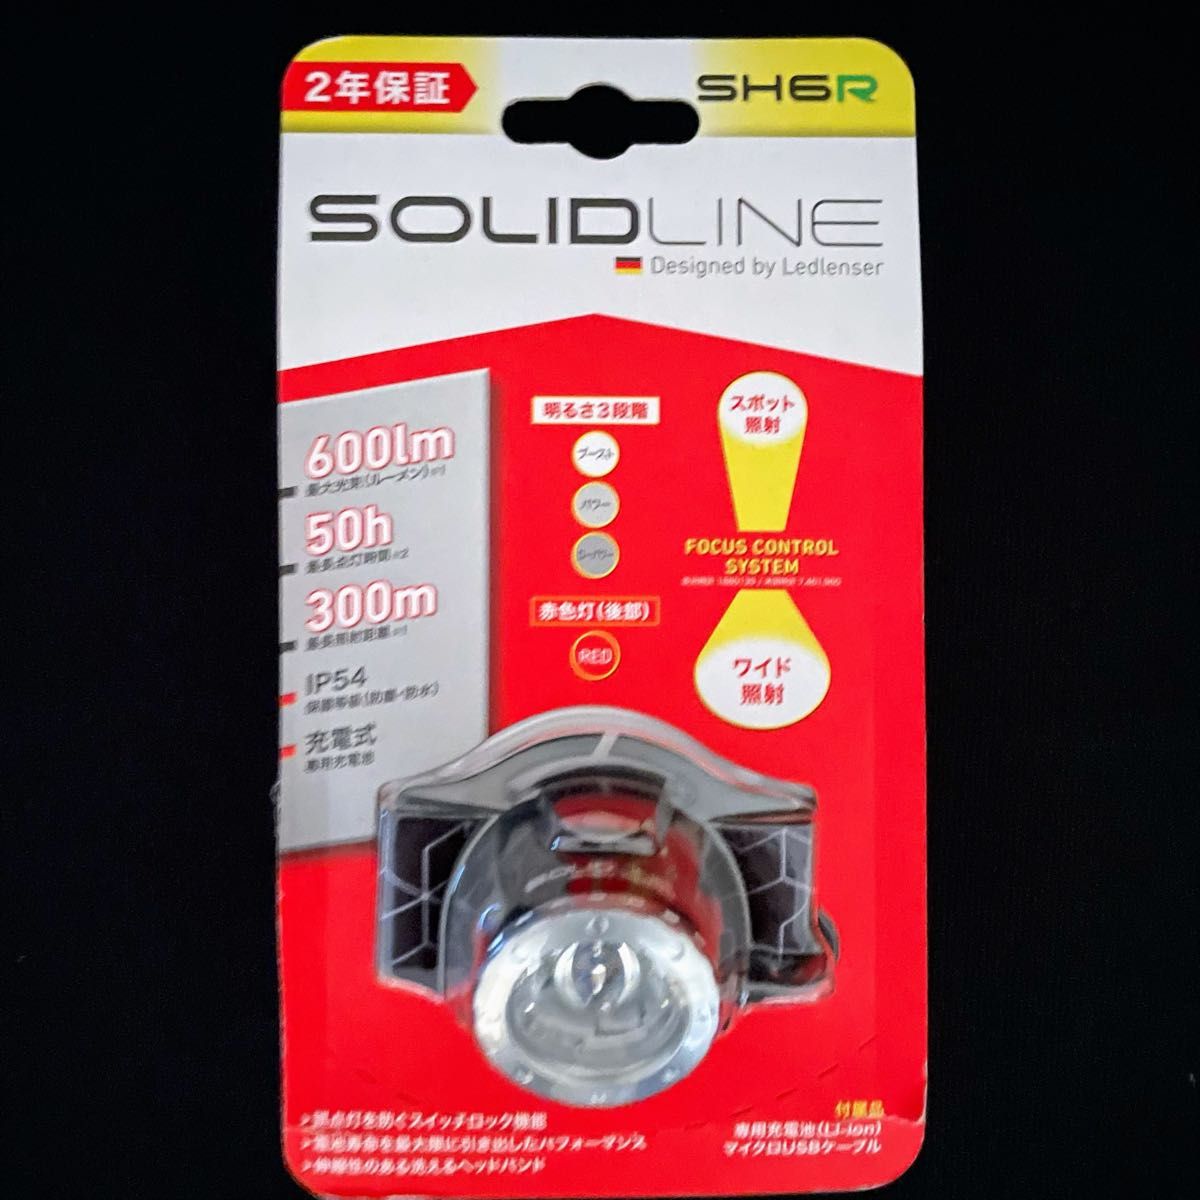 レッドレンザー   ソリッドライン  SOLIDLINE SH6R 502206